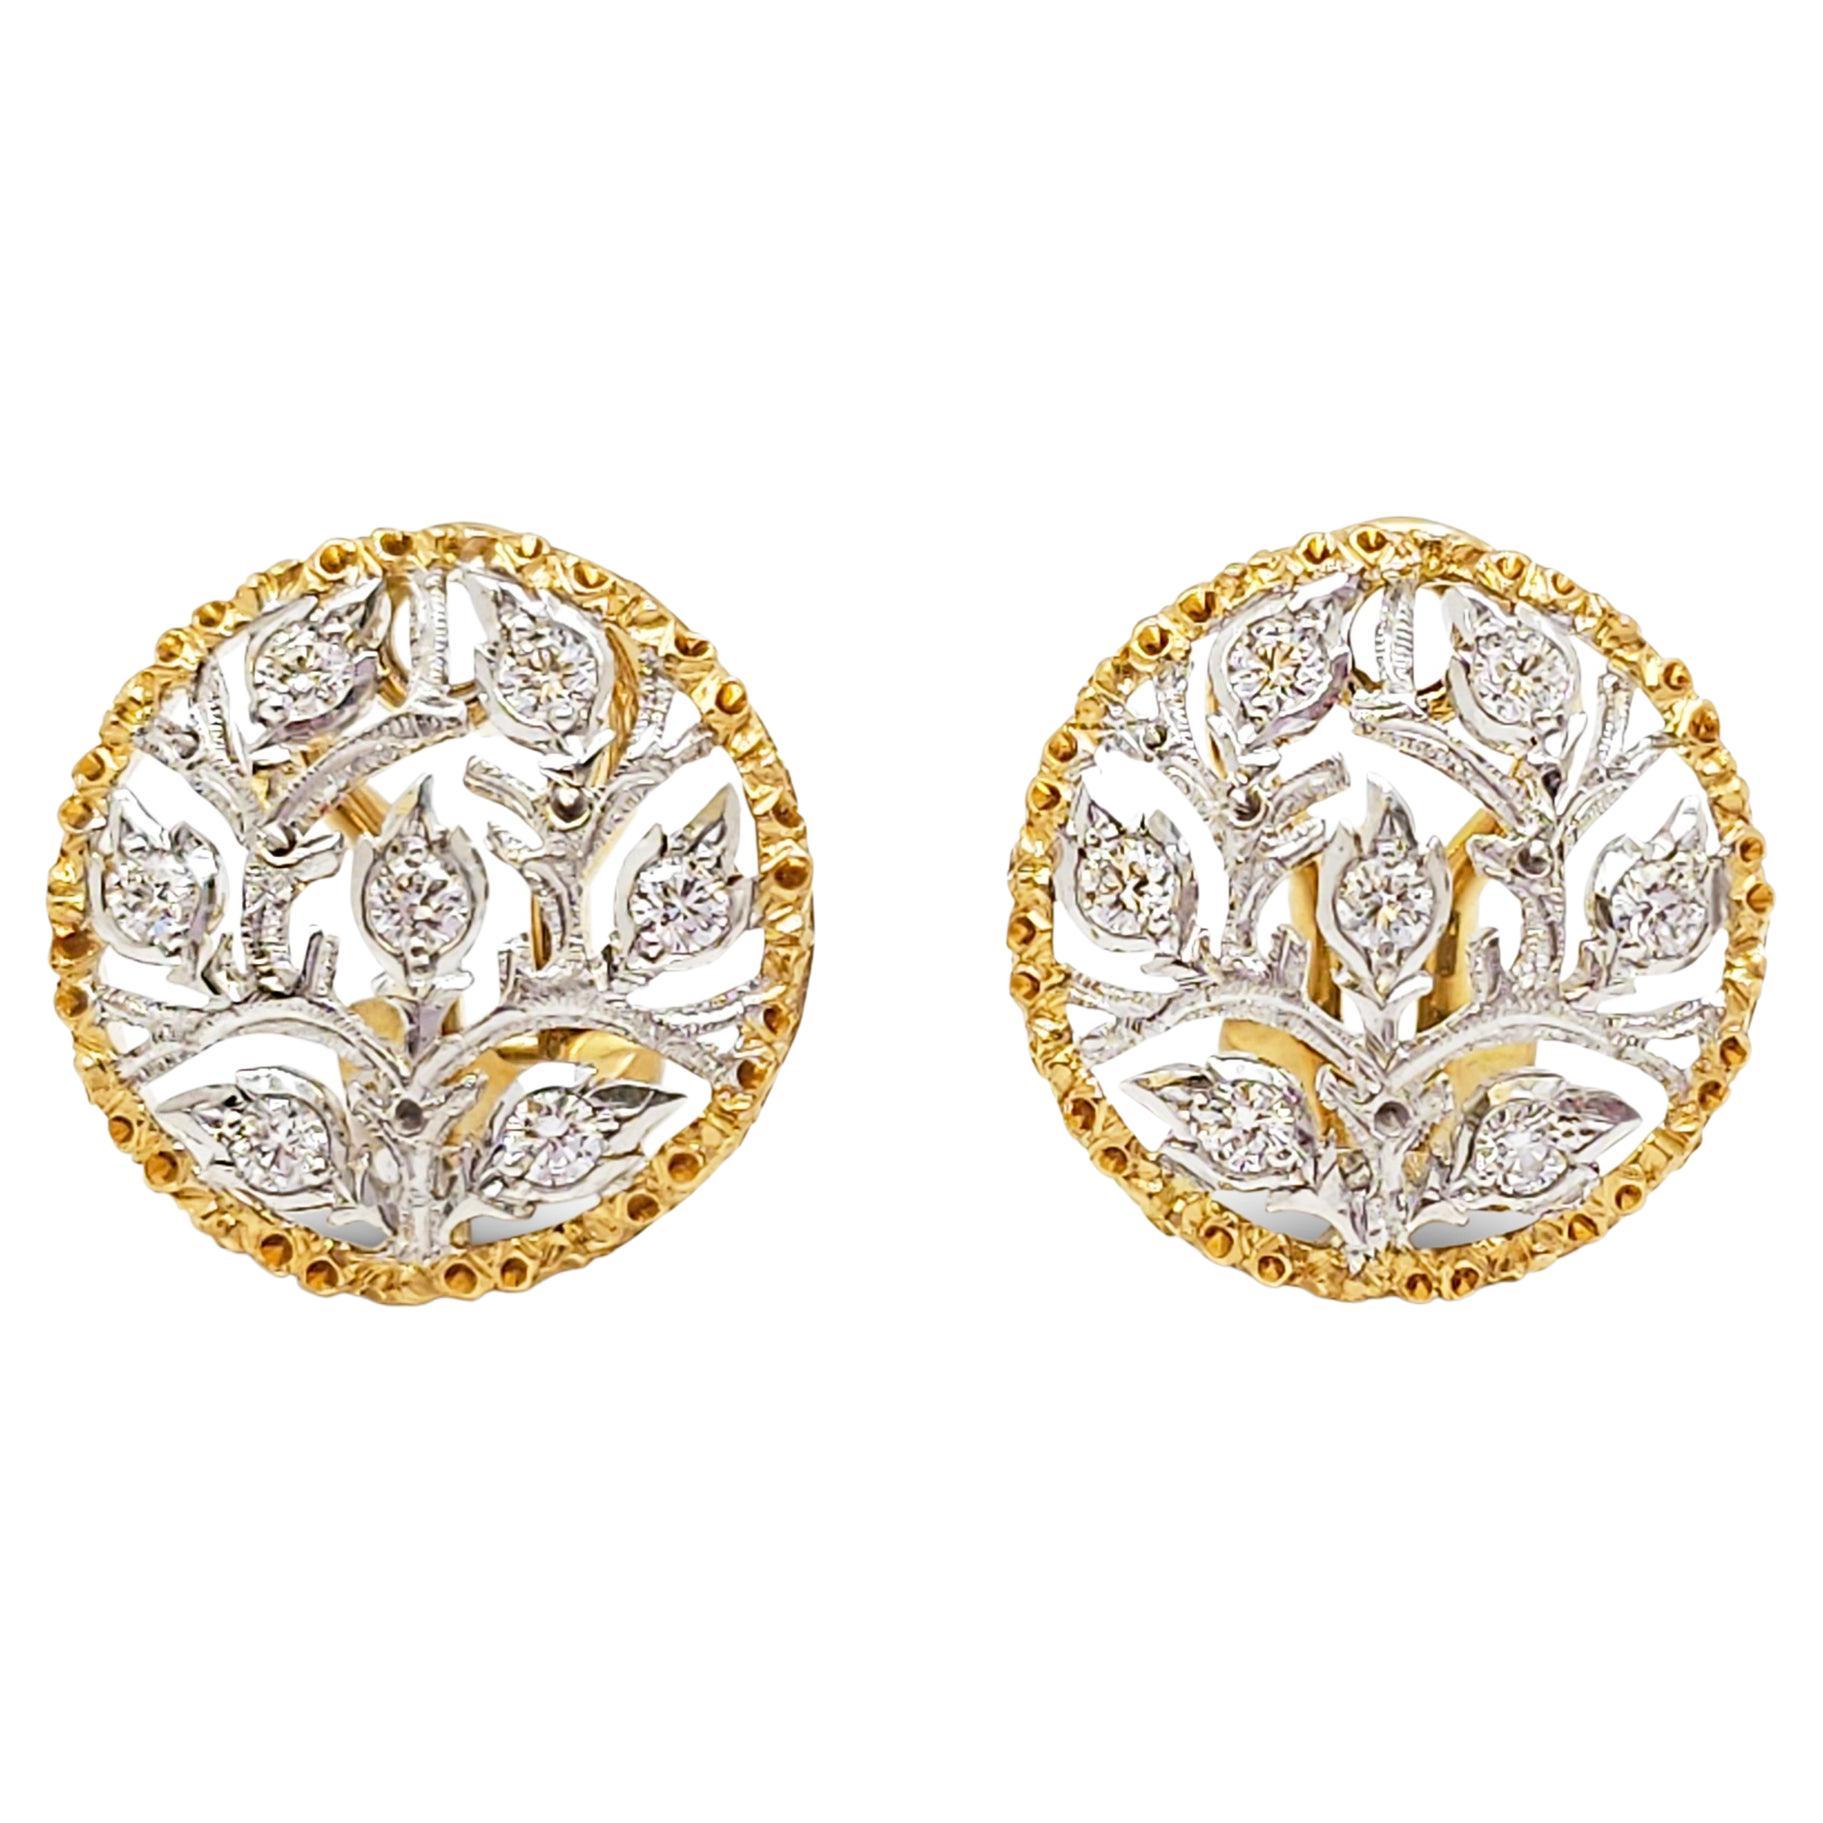 Buccellati 'Ramage' Gold and Diamond Earrings